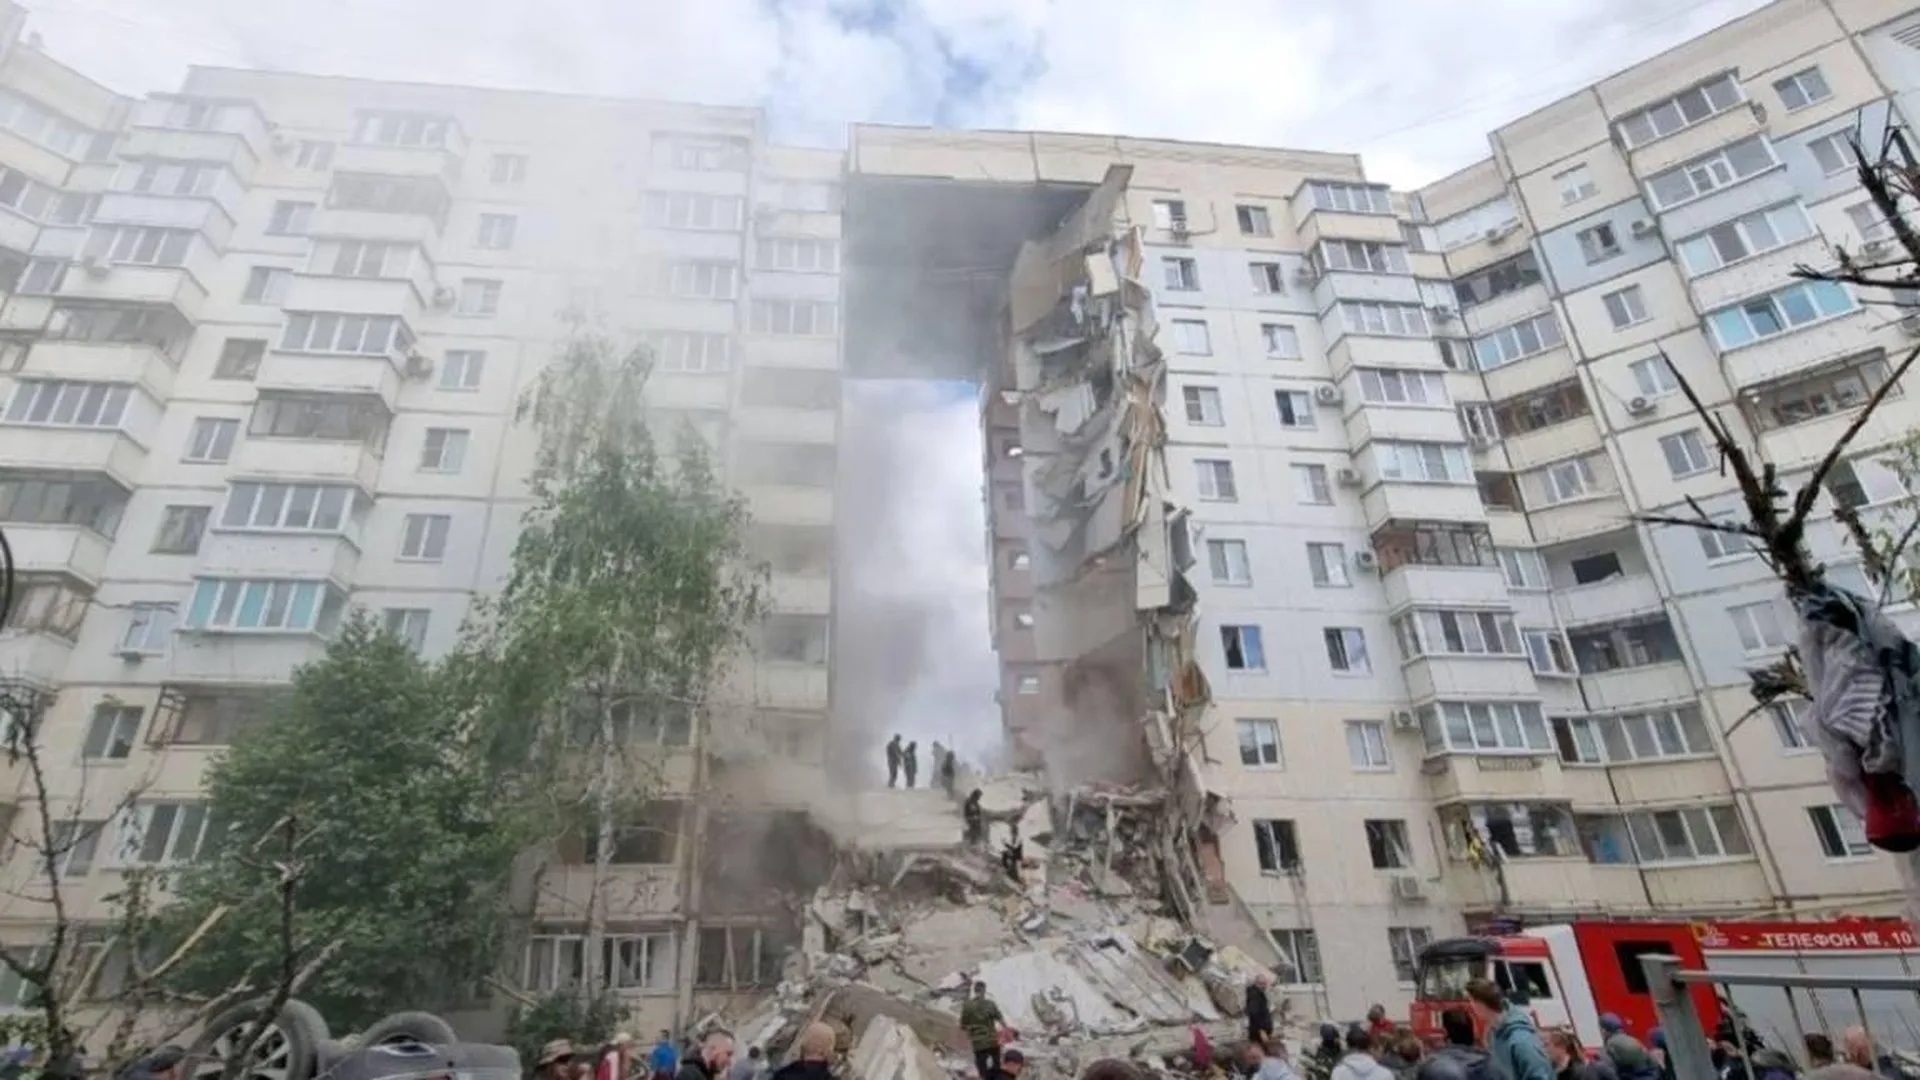 Андрей Воробьев: Обстрел жилого района в Белгороде — настоящая трагедия